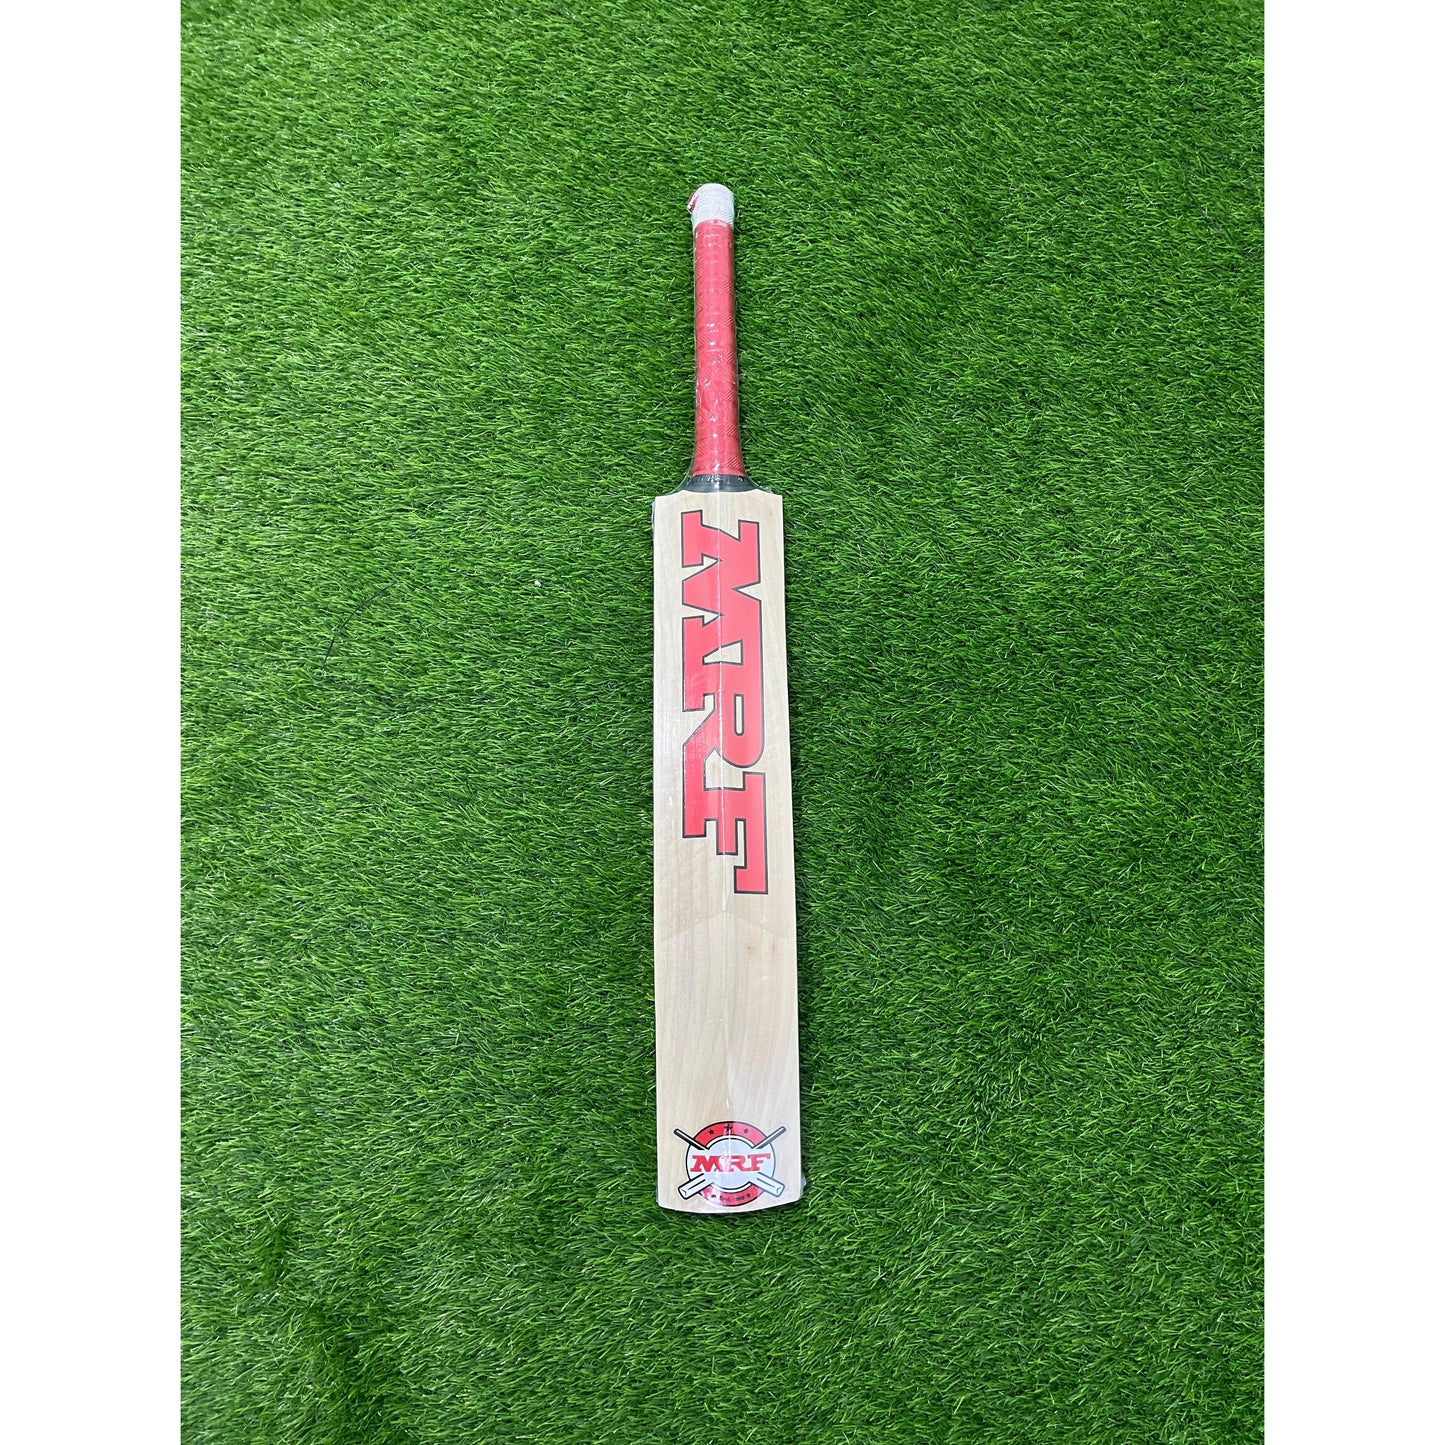 MRF KW CHAMP Kashmir Willow Cricket Bat - Junior Size 5 (Five)